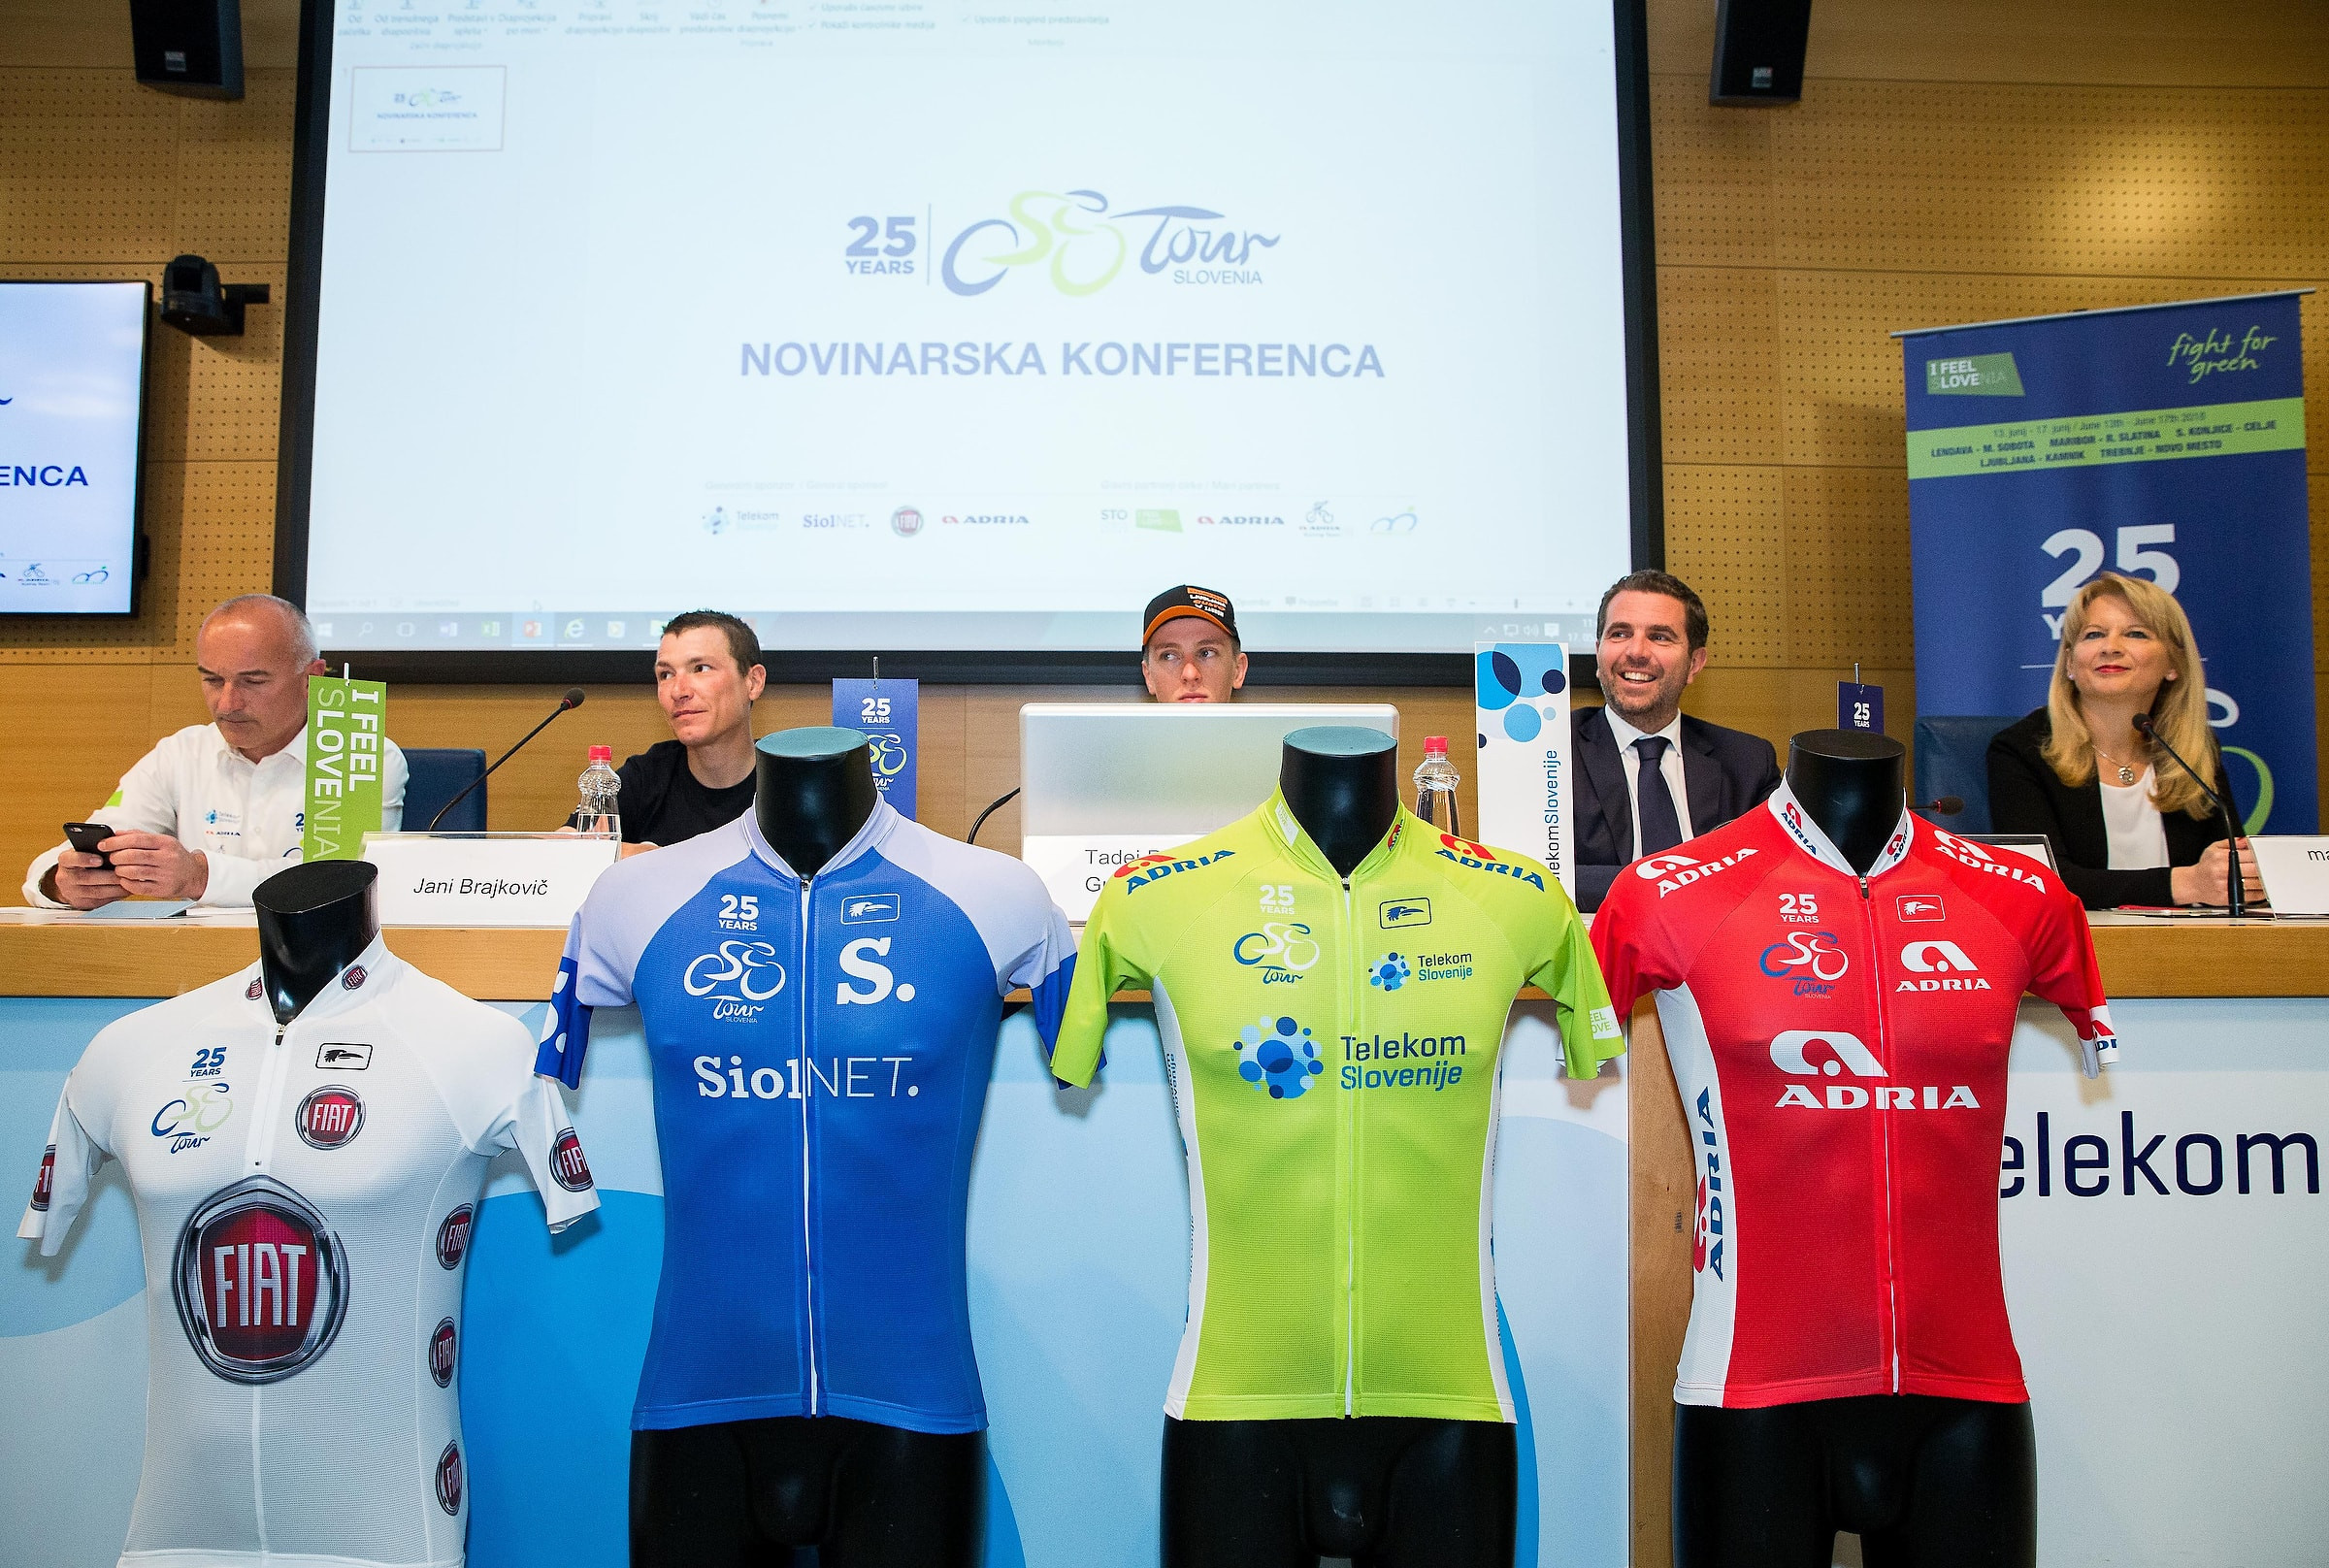 8 World Tour team to compete on 2018 Tour of Slovenia 